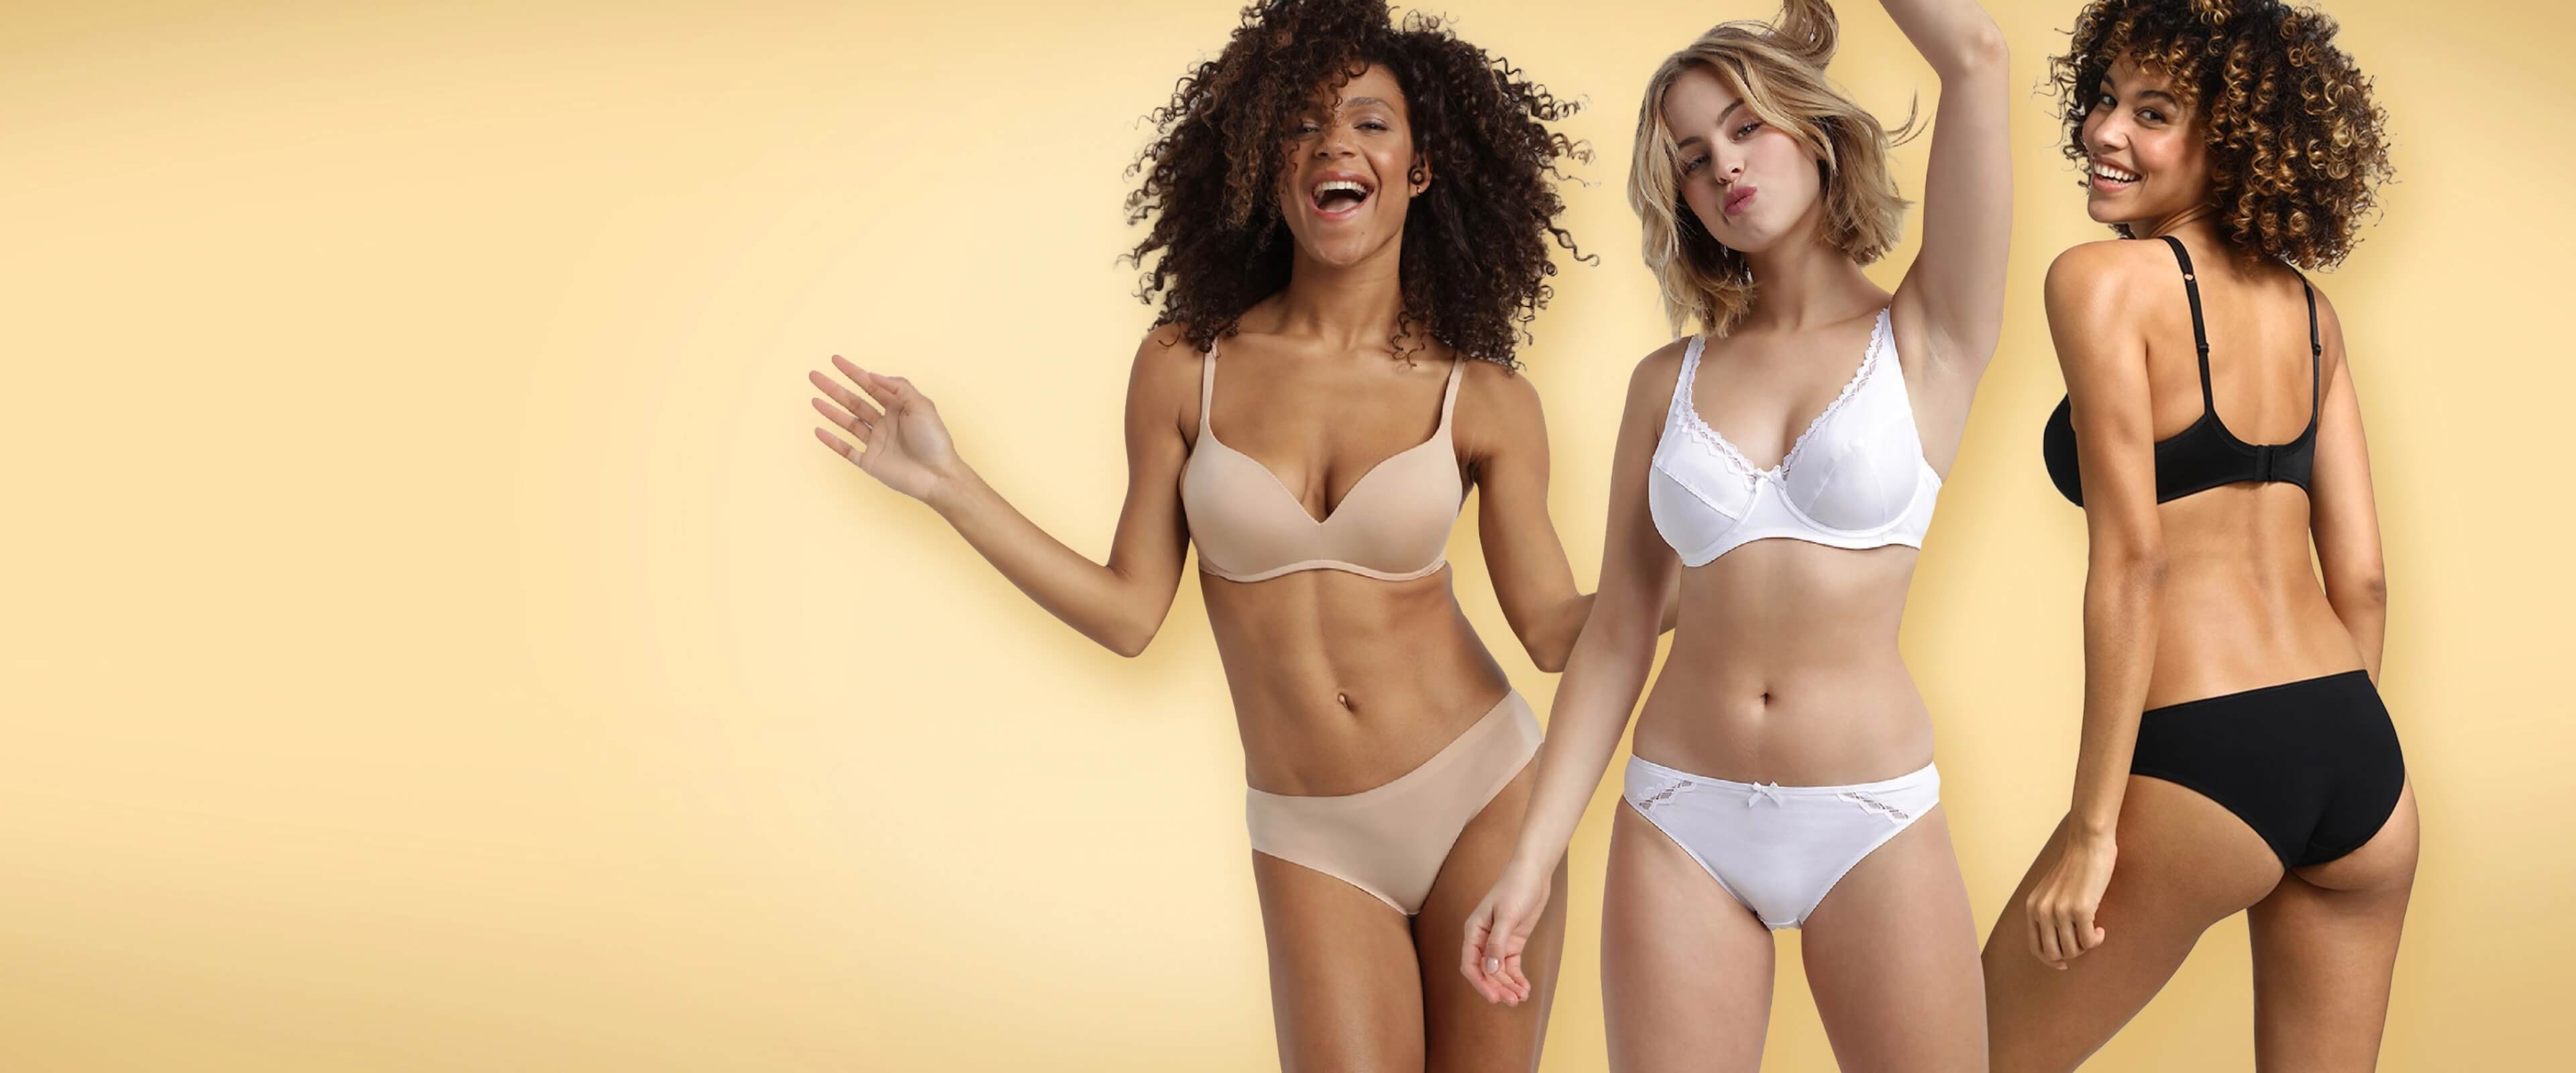 Buy Ladies Underwear Online - Shop on Carrefour Qatar